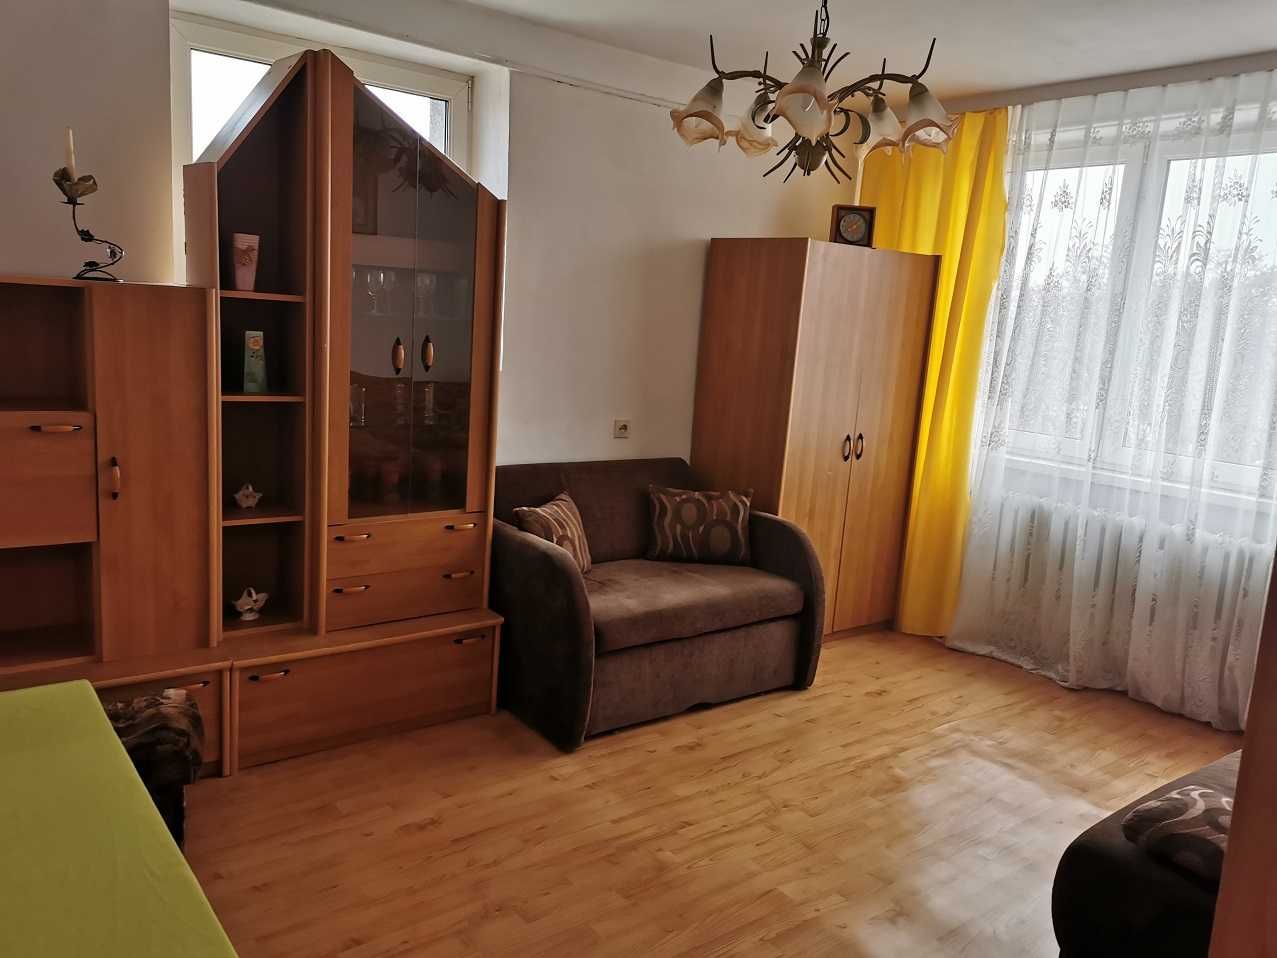 Sprzedam mieszkanie 2-pokojowe w Kałuszynie powiat Mińsk Mazowiecki